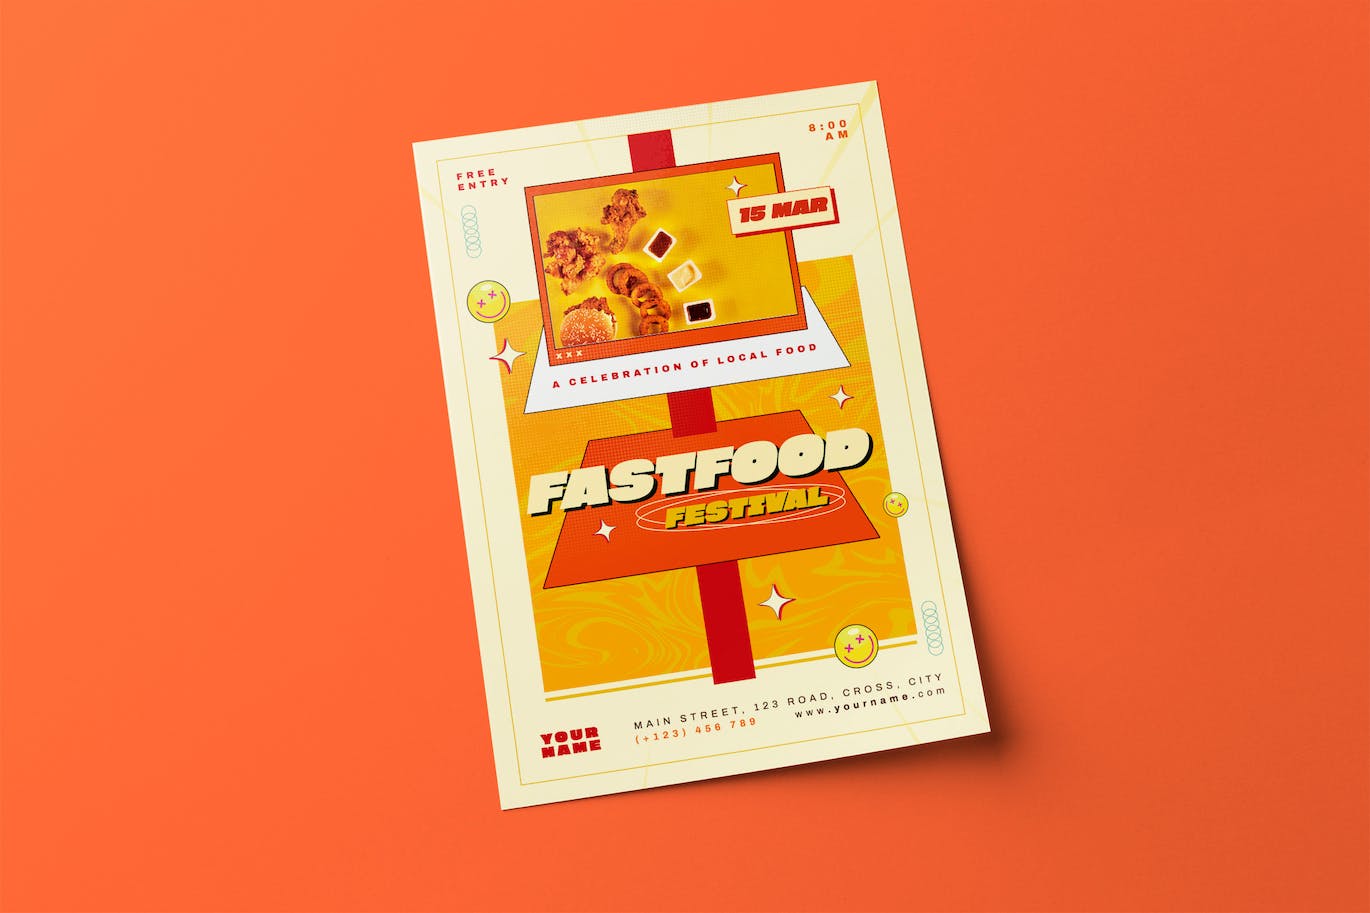 快餐节日宣传单素材 Fast Food Festival Flyer 设计素材 第1张